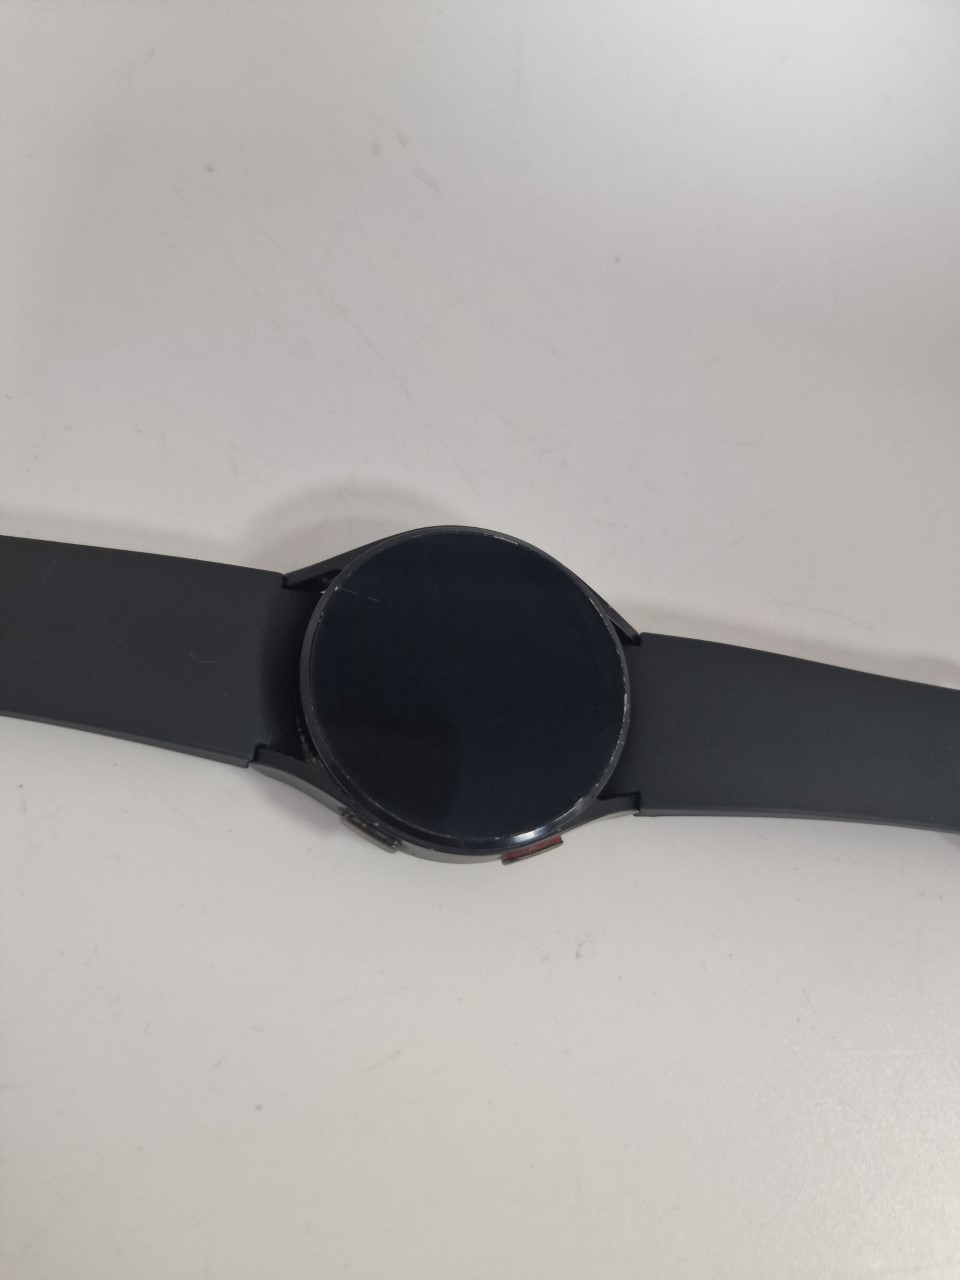 Galaxy Watch 4 - Boxed - Black - 40mm